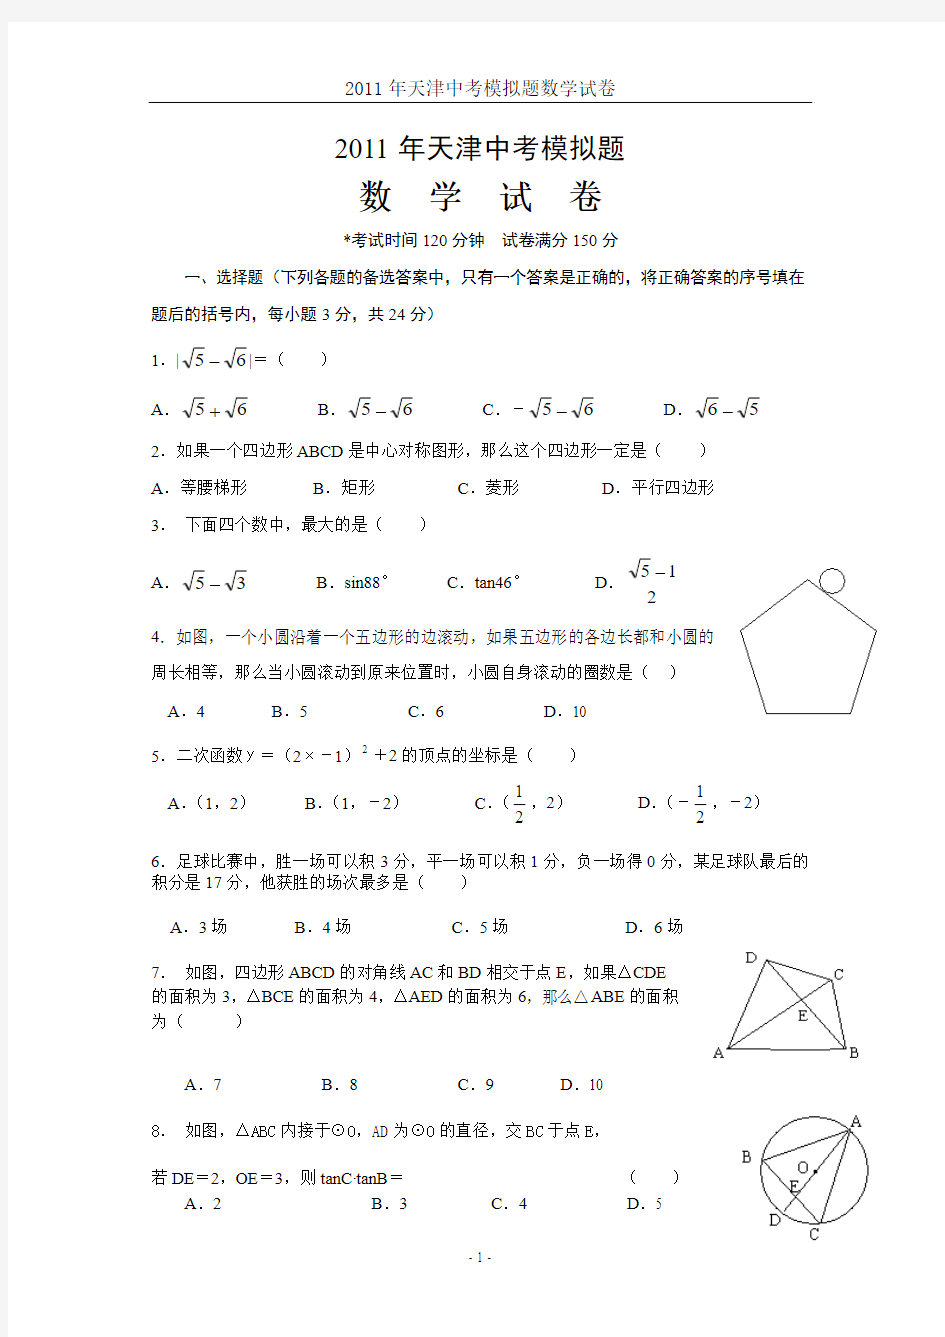 2011年天津中考模拟题数学试卷(含答案)